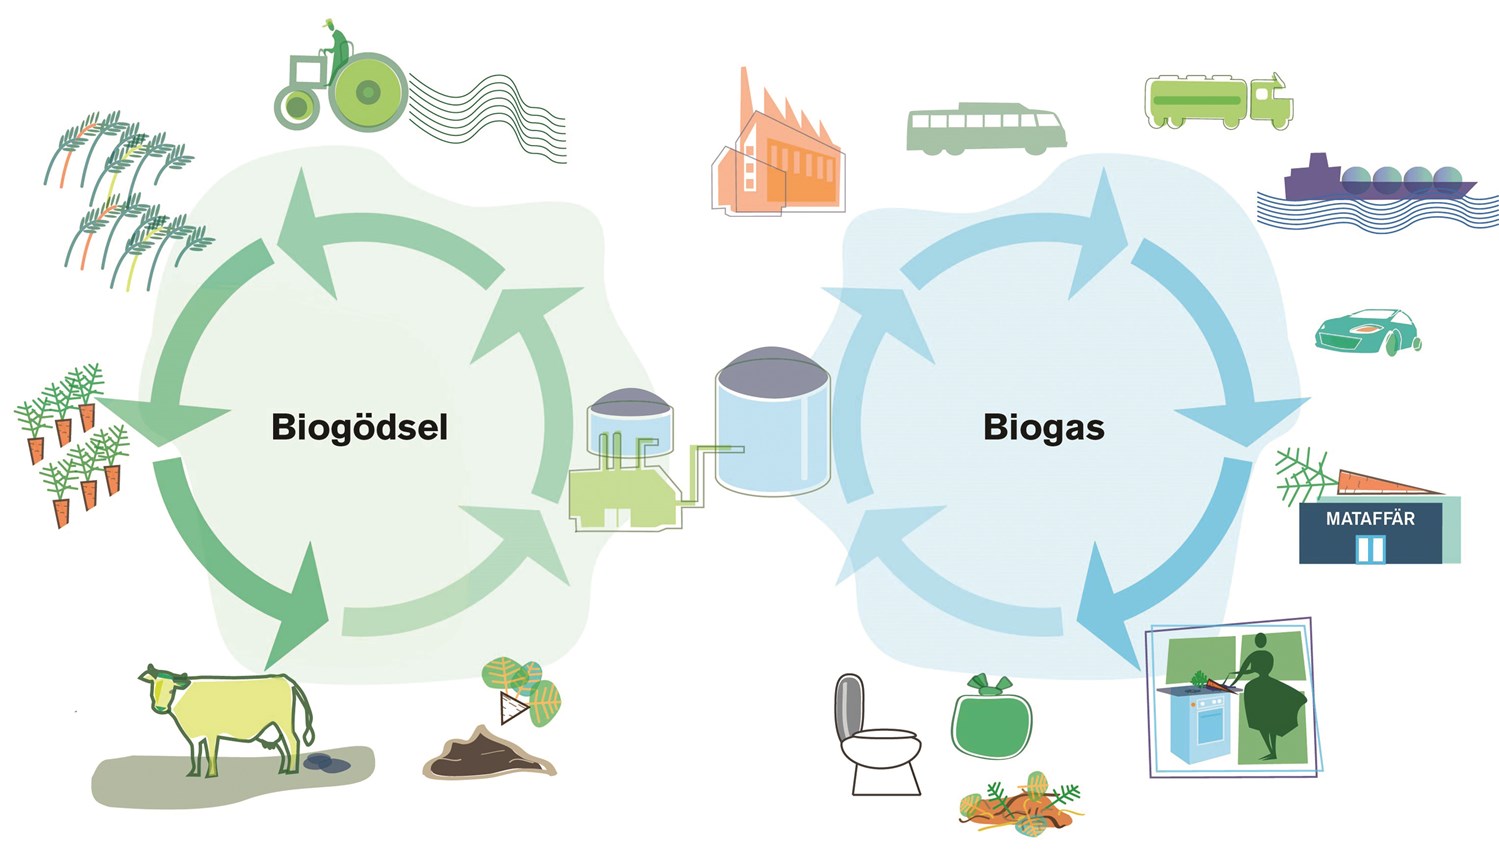 Biogas och biogödsel bidrar till kretslopp